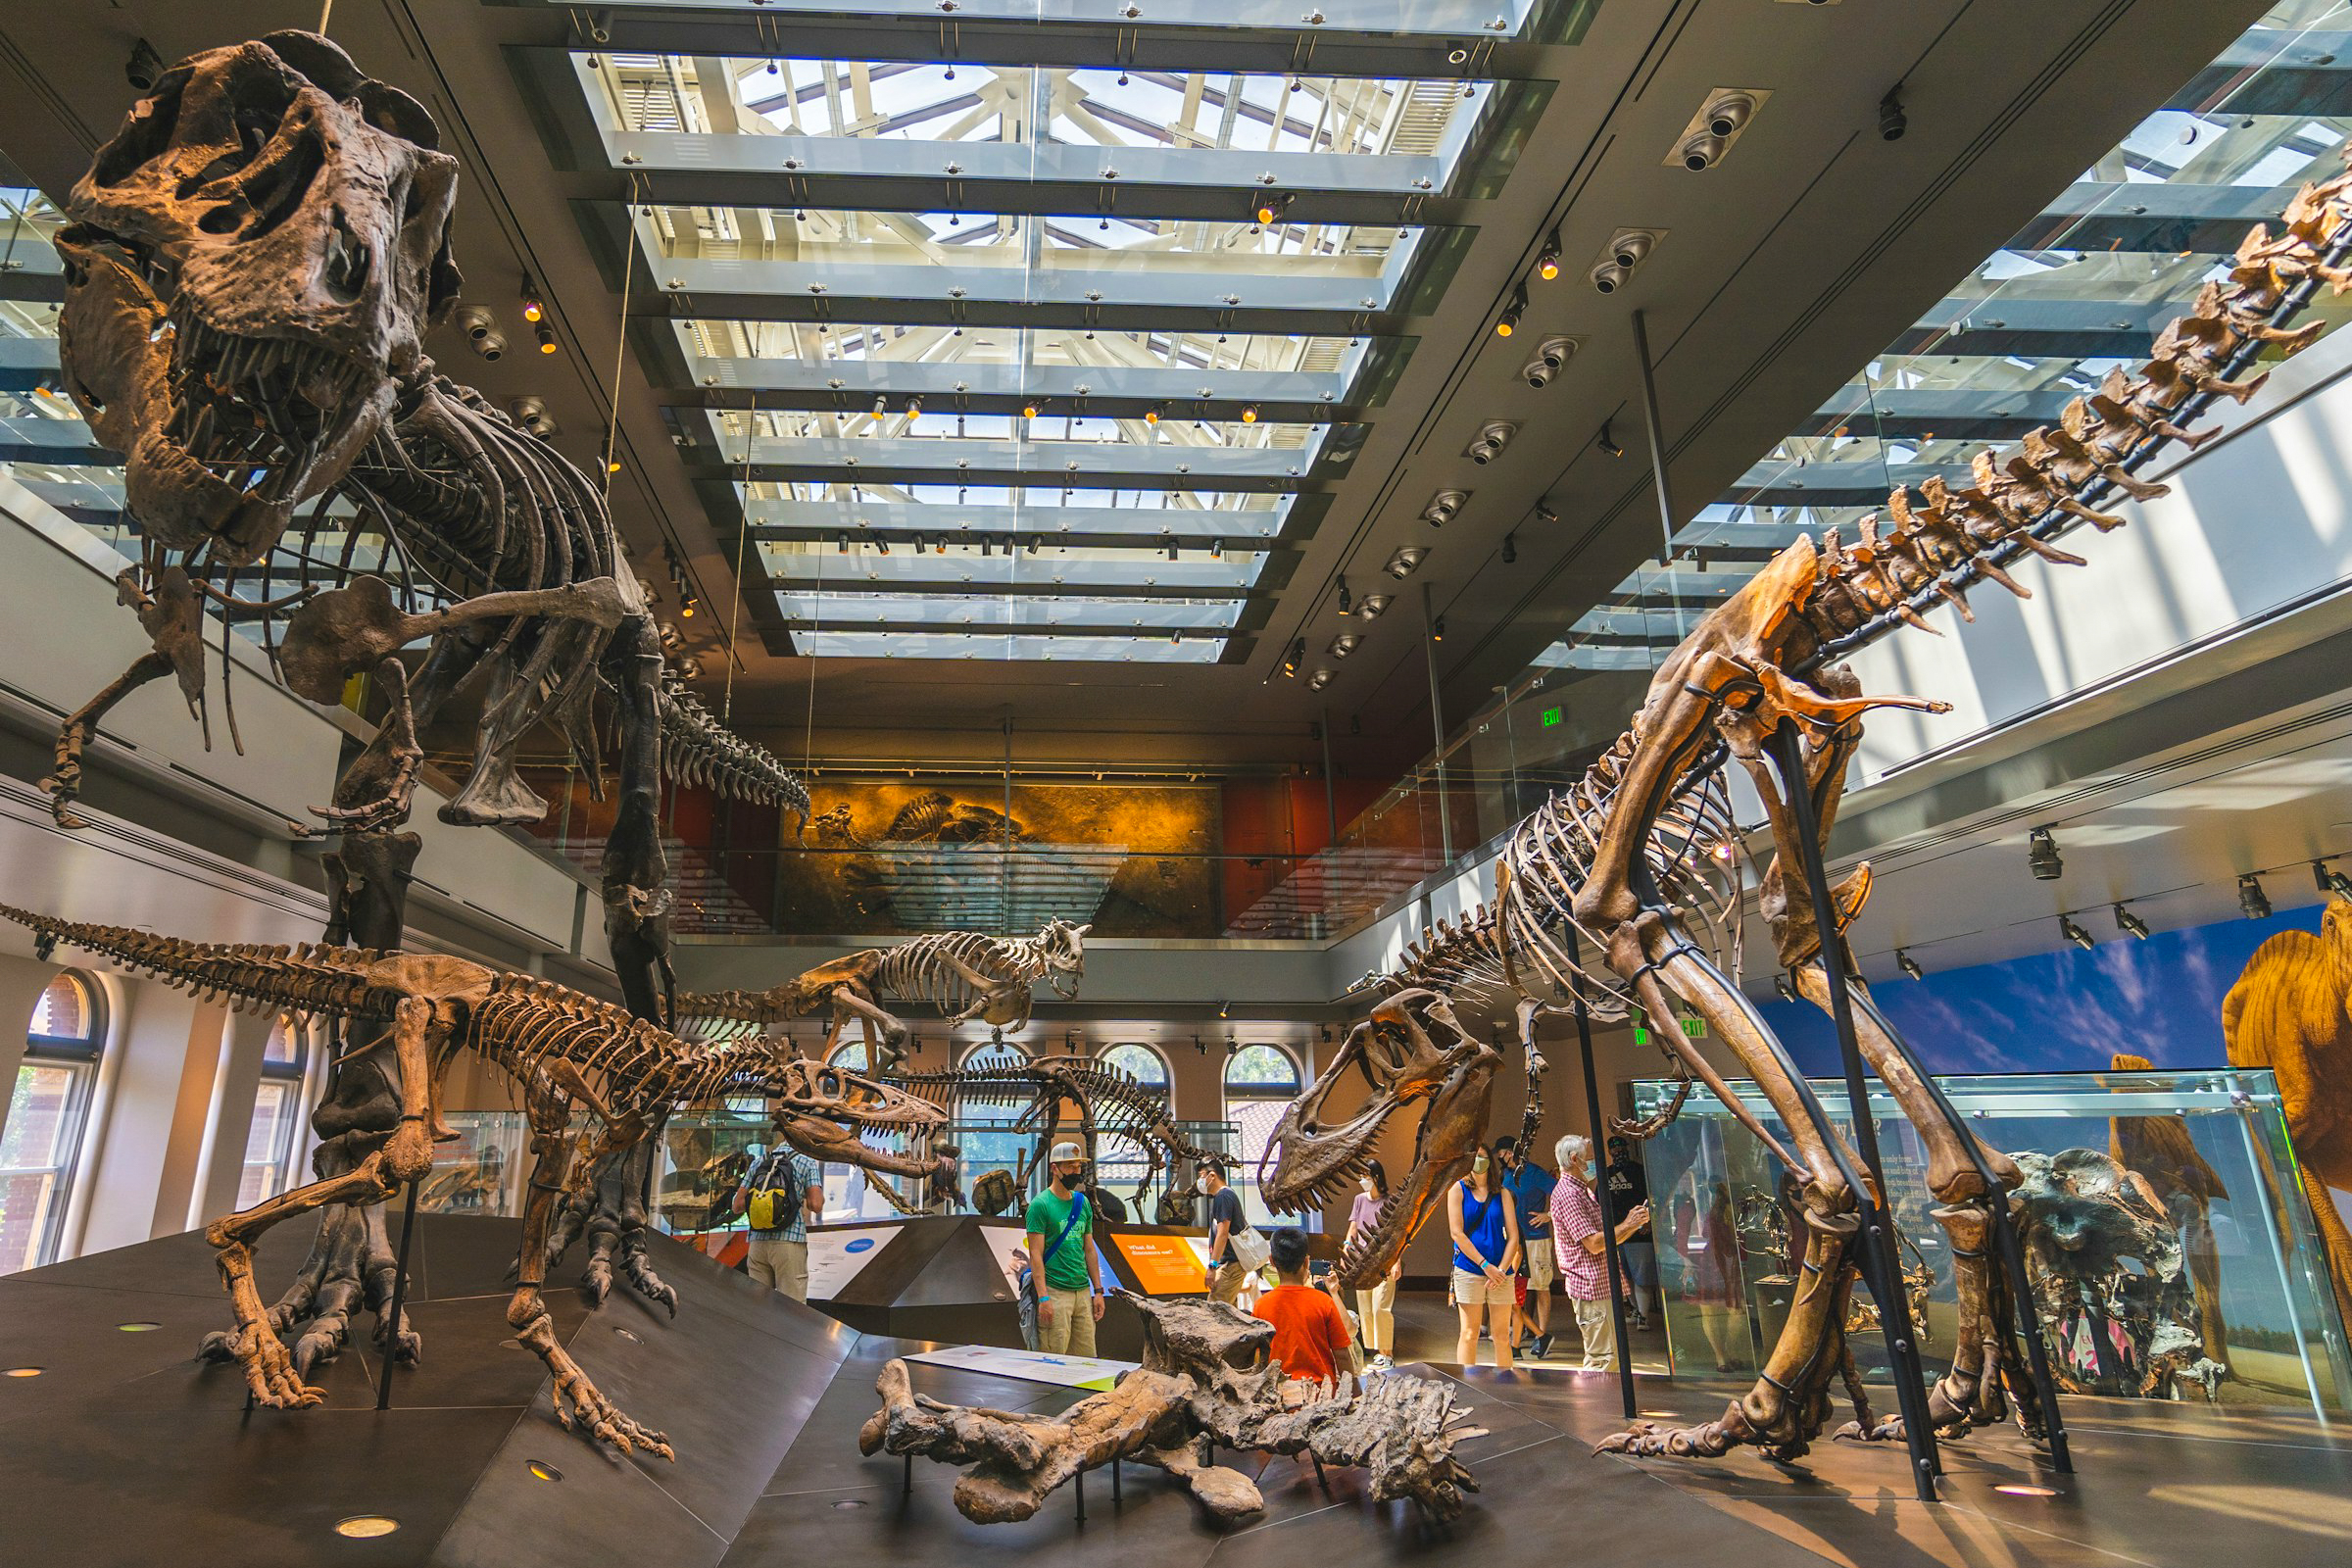 Wer sich für Naturwissenschaften interessiert, sollte unbedingt ins Natural History Museum gehen